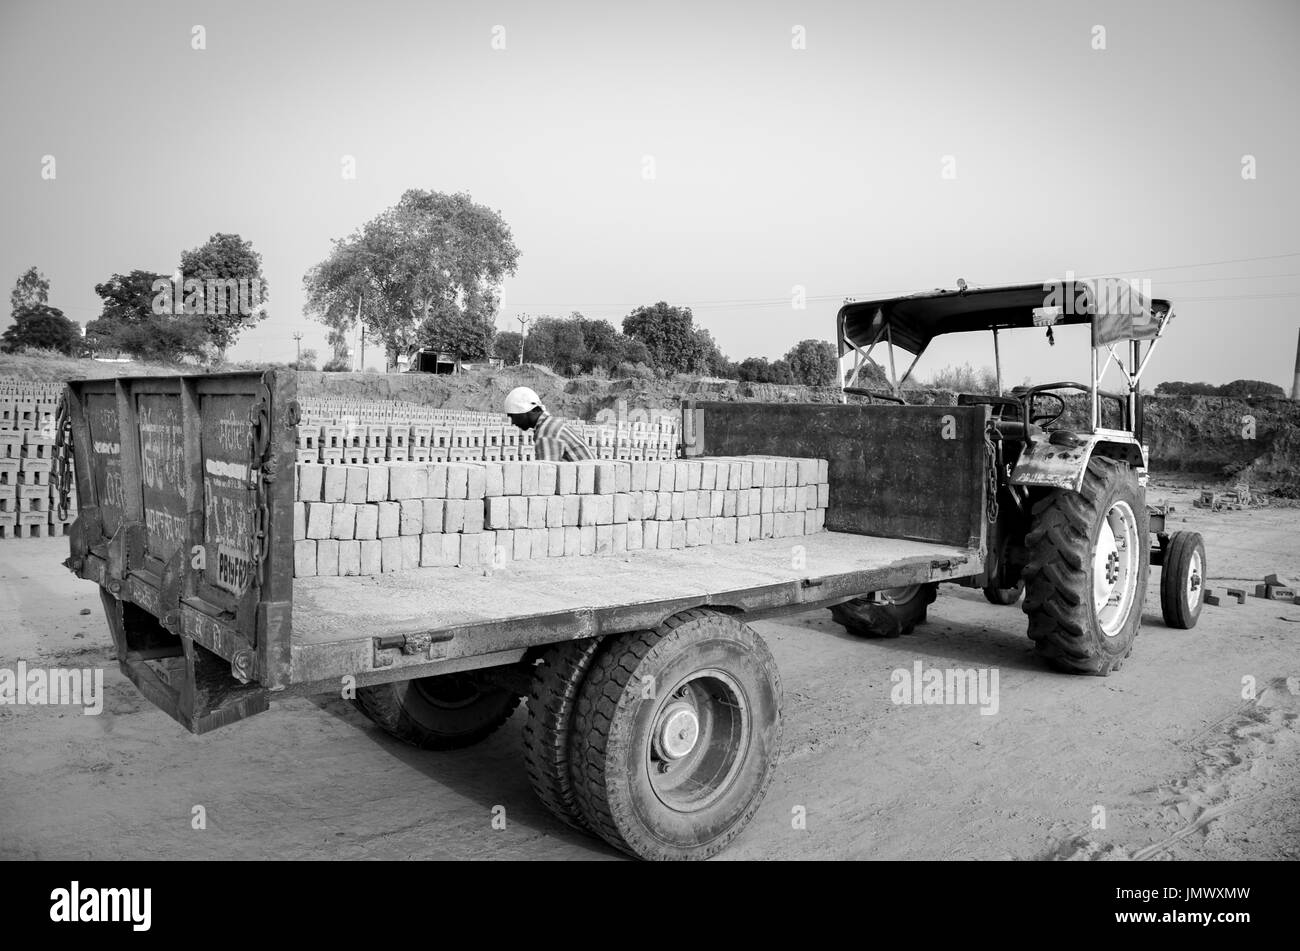 Amritsar, Punjab, india - 21 avril 2017 : photo monochrome de briques d'être chargé dans un camion par un travailleur prêt pour l'expédition à un marché de gros Banque D'Images